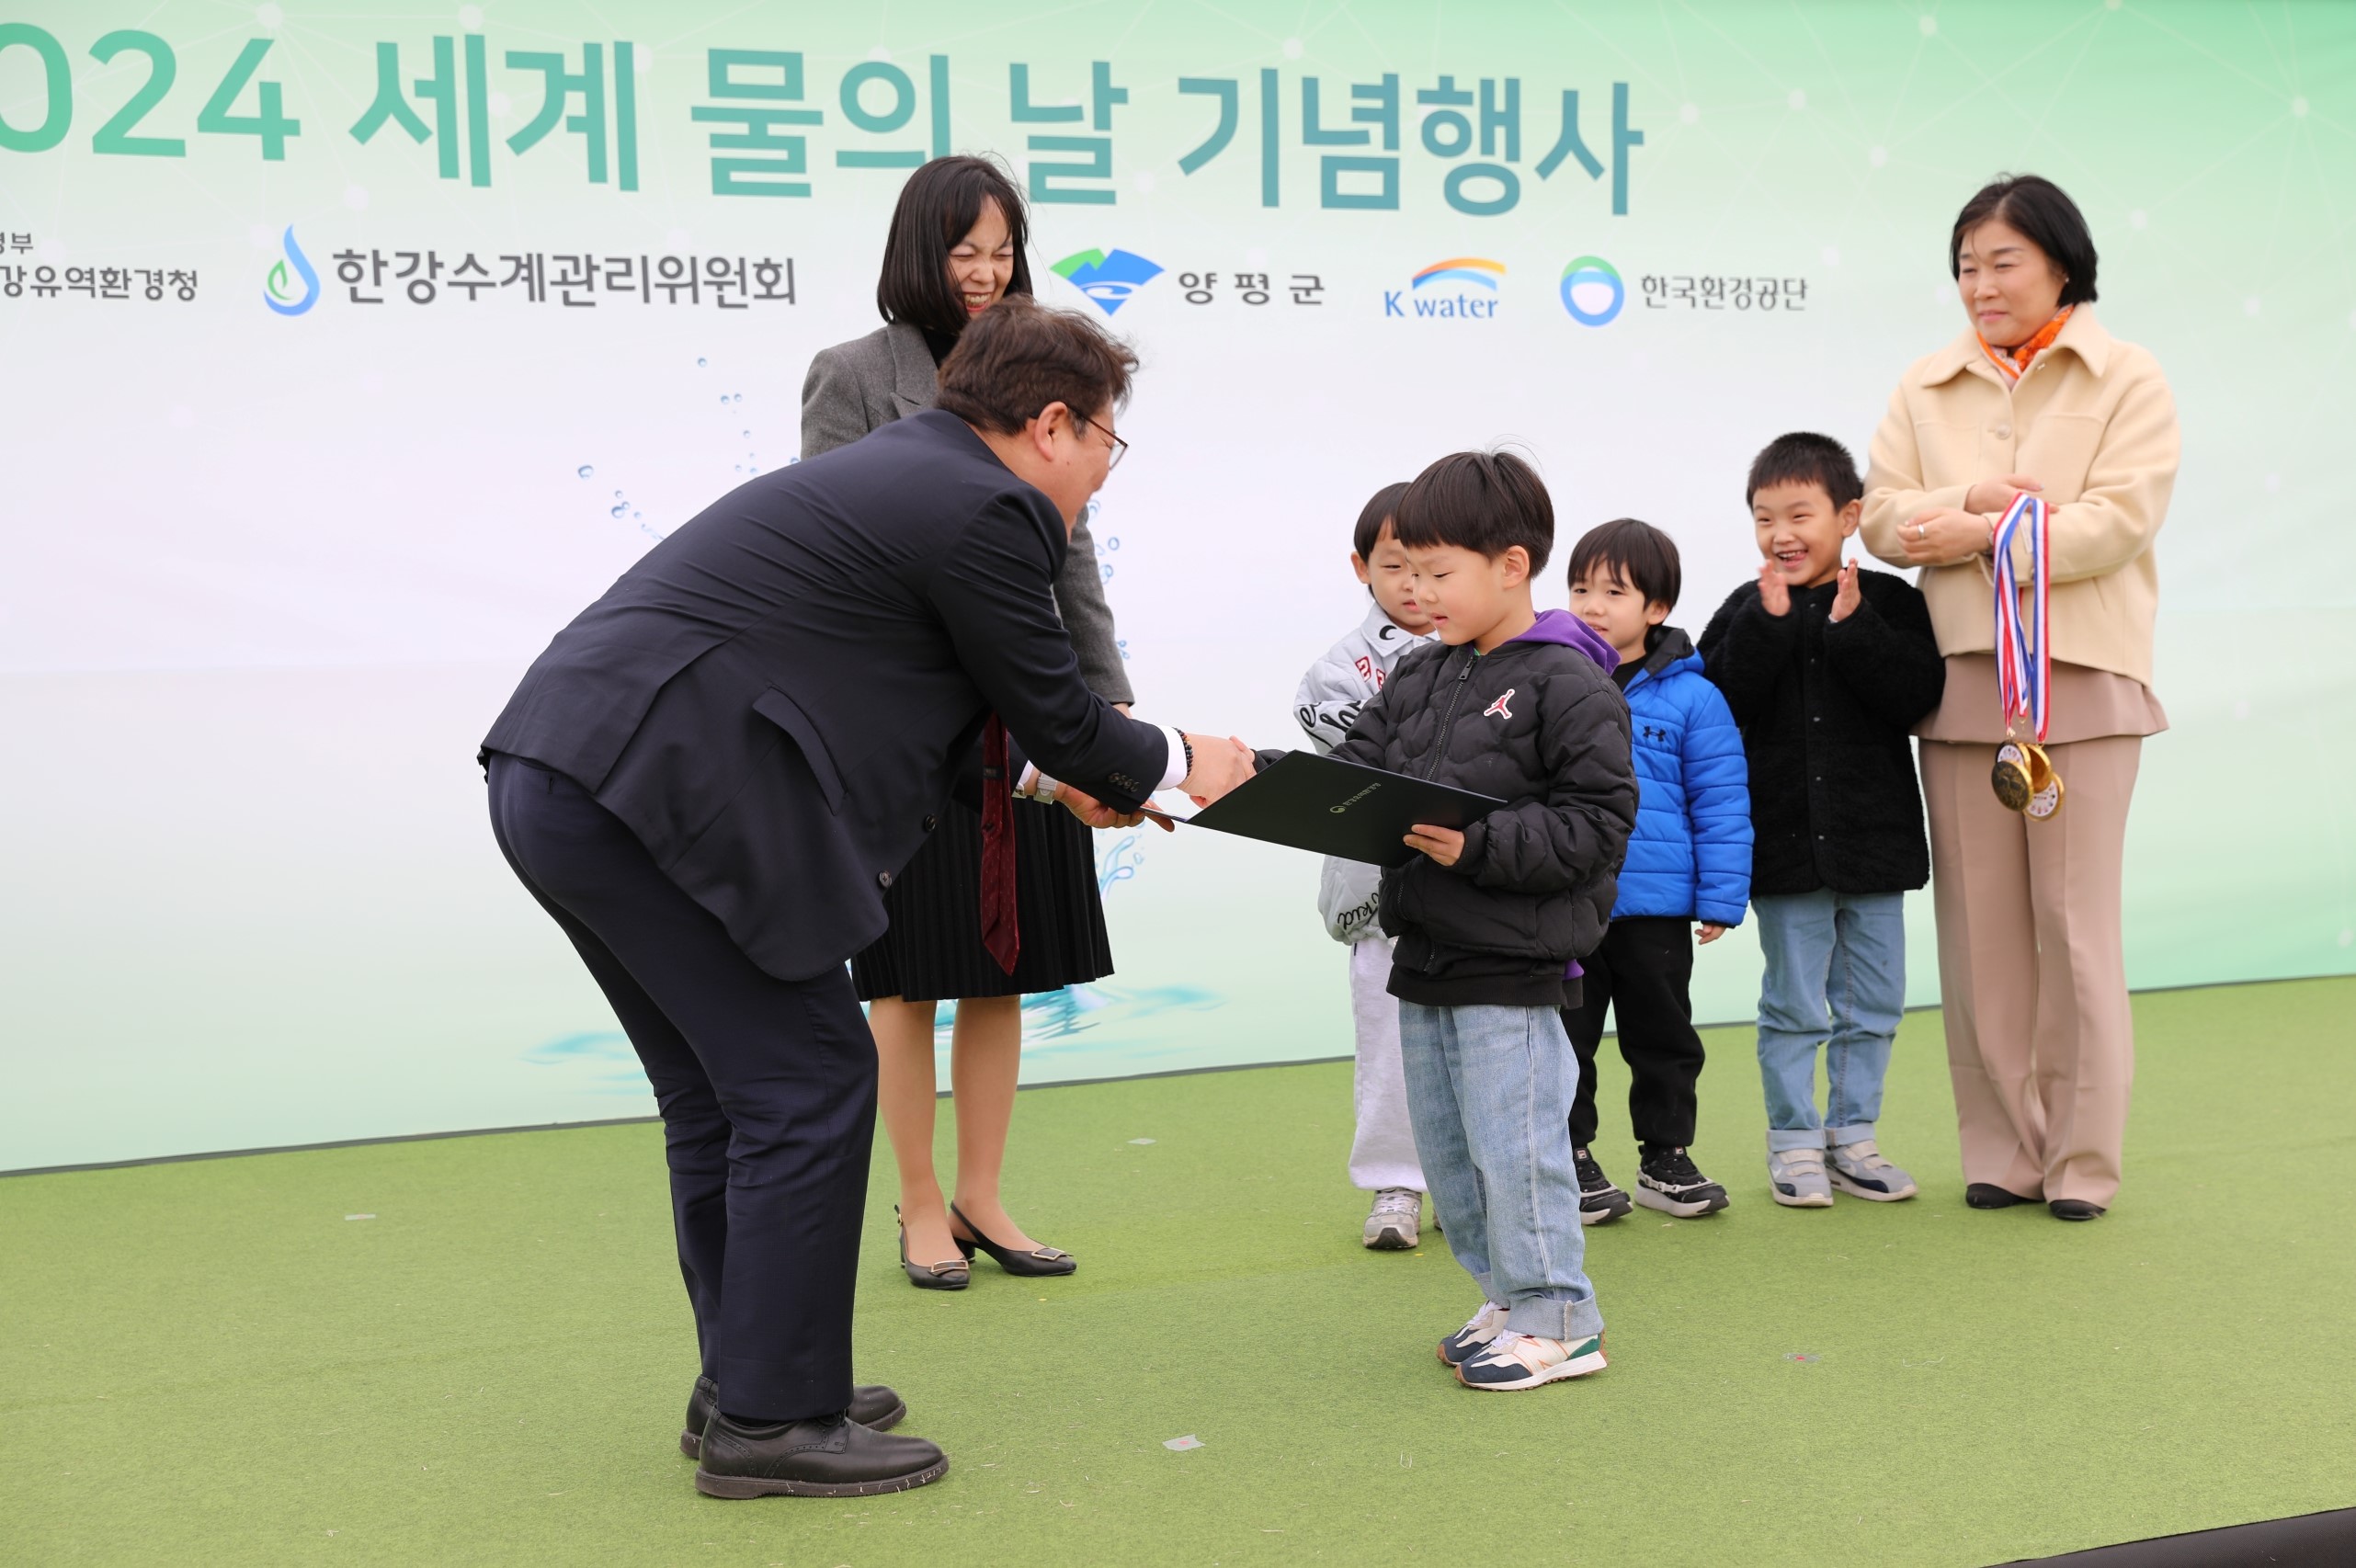 사진2. 김동구 한강유역환경청장(왼쪽)이 22일, 경기도 양평군 수풀로 양수리에서 어린이 그림공모전 수상팀에게 상장을 수여하였다.